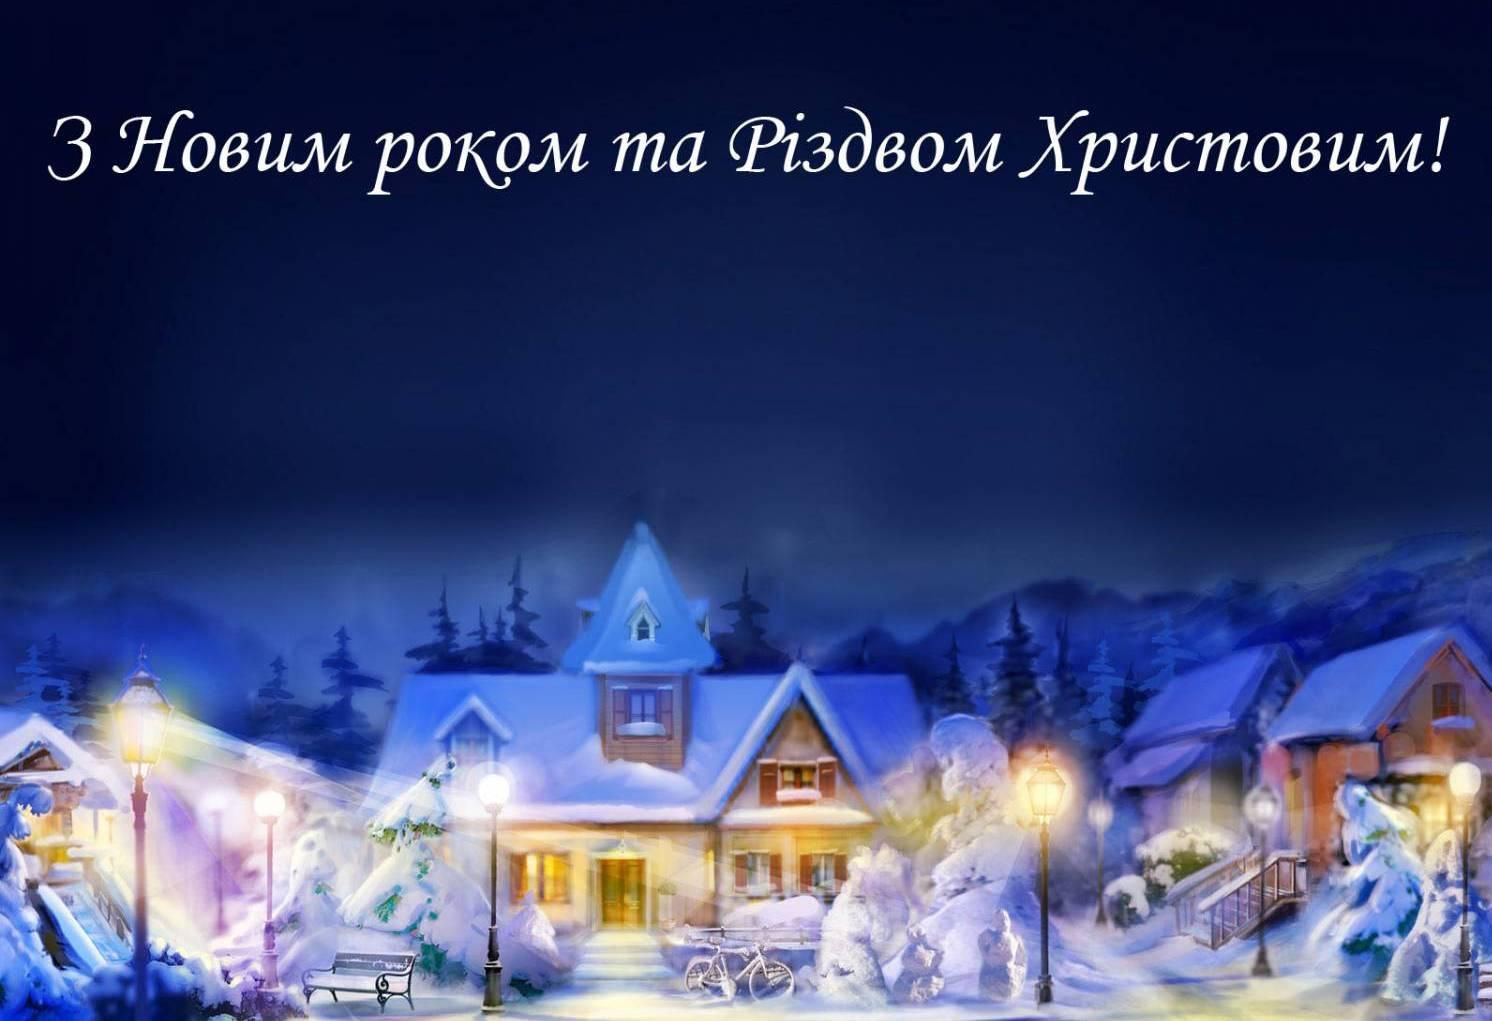 Привітання з Новим роком та Різдвом Христовим у прозі
